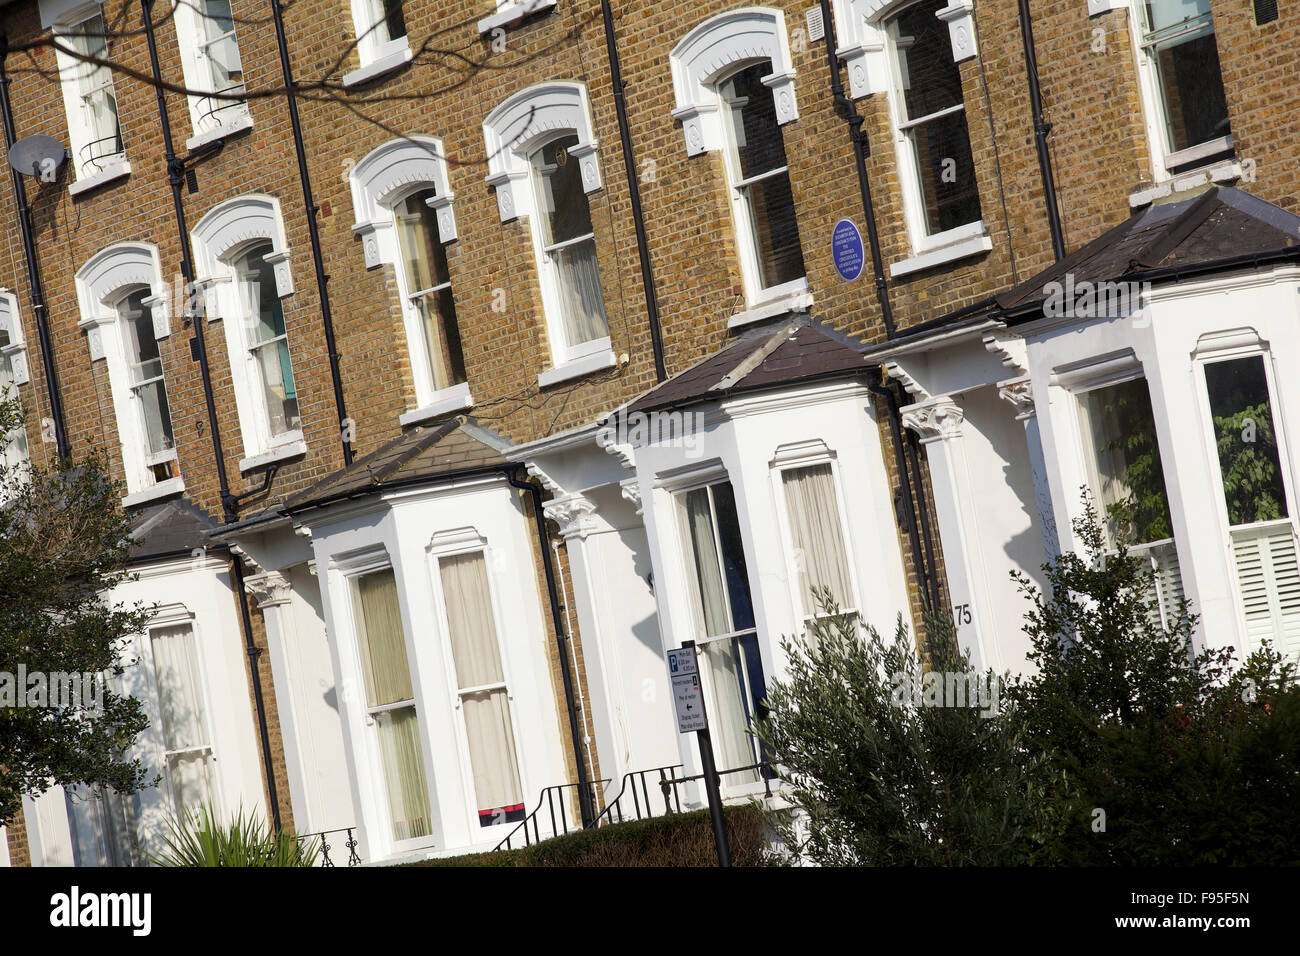 Hammersmith, London. Seitlicher Blick auf Reihenhäuser in einer Wohnstraße in Hammersmith. Erkerfenster. Ziegel auf der oberen Hälfte der Häuser verwendet. Stockfoto